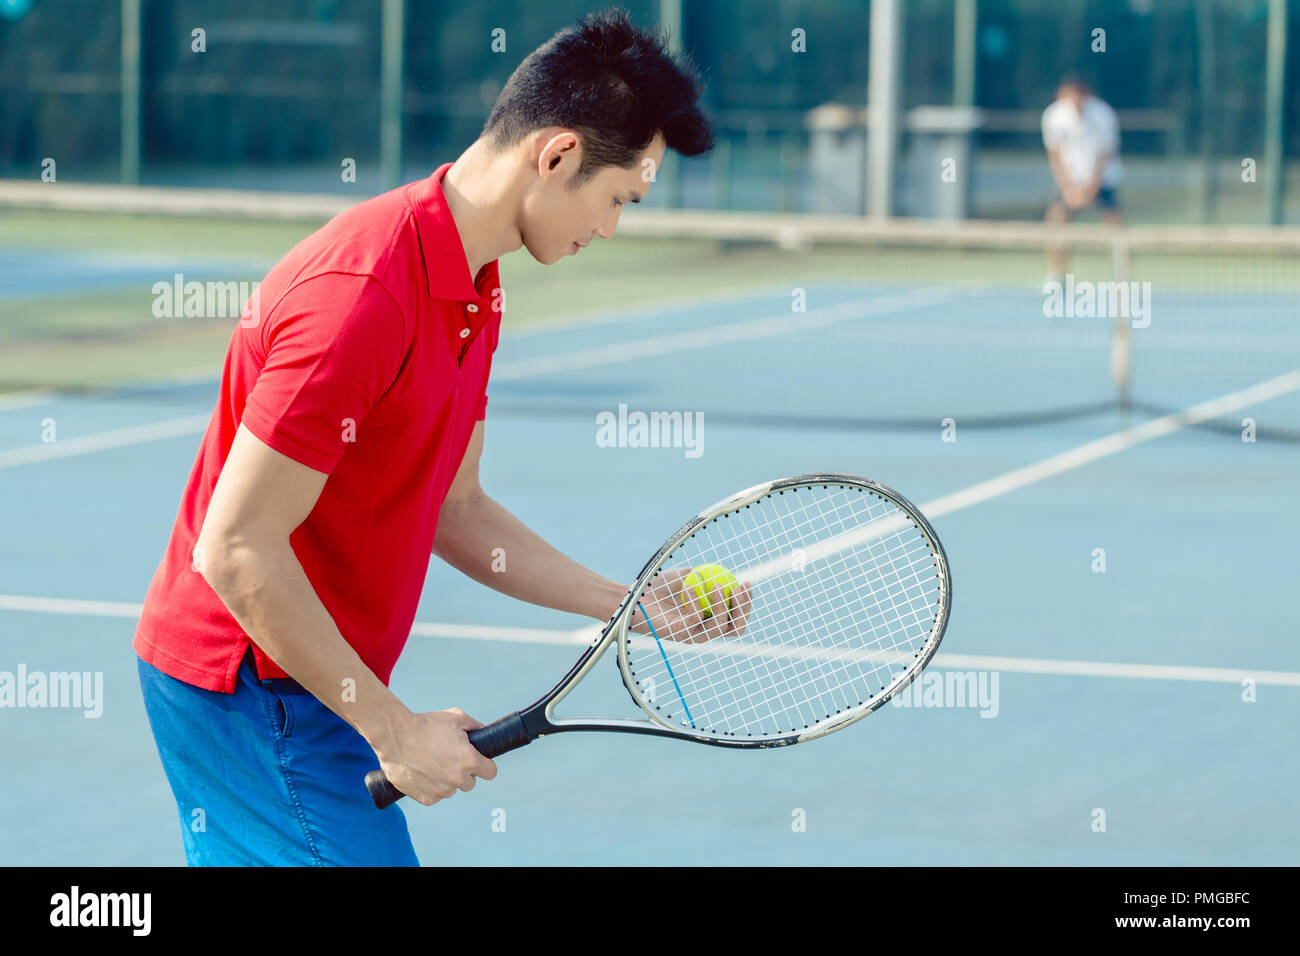 Joueur de tennis asiatique à la recherche au bal avec concentration avant de servir Banque D'Images